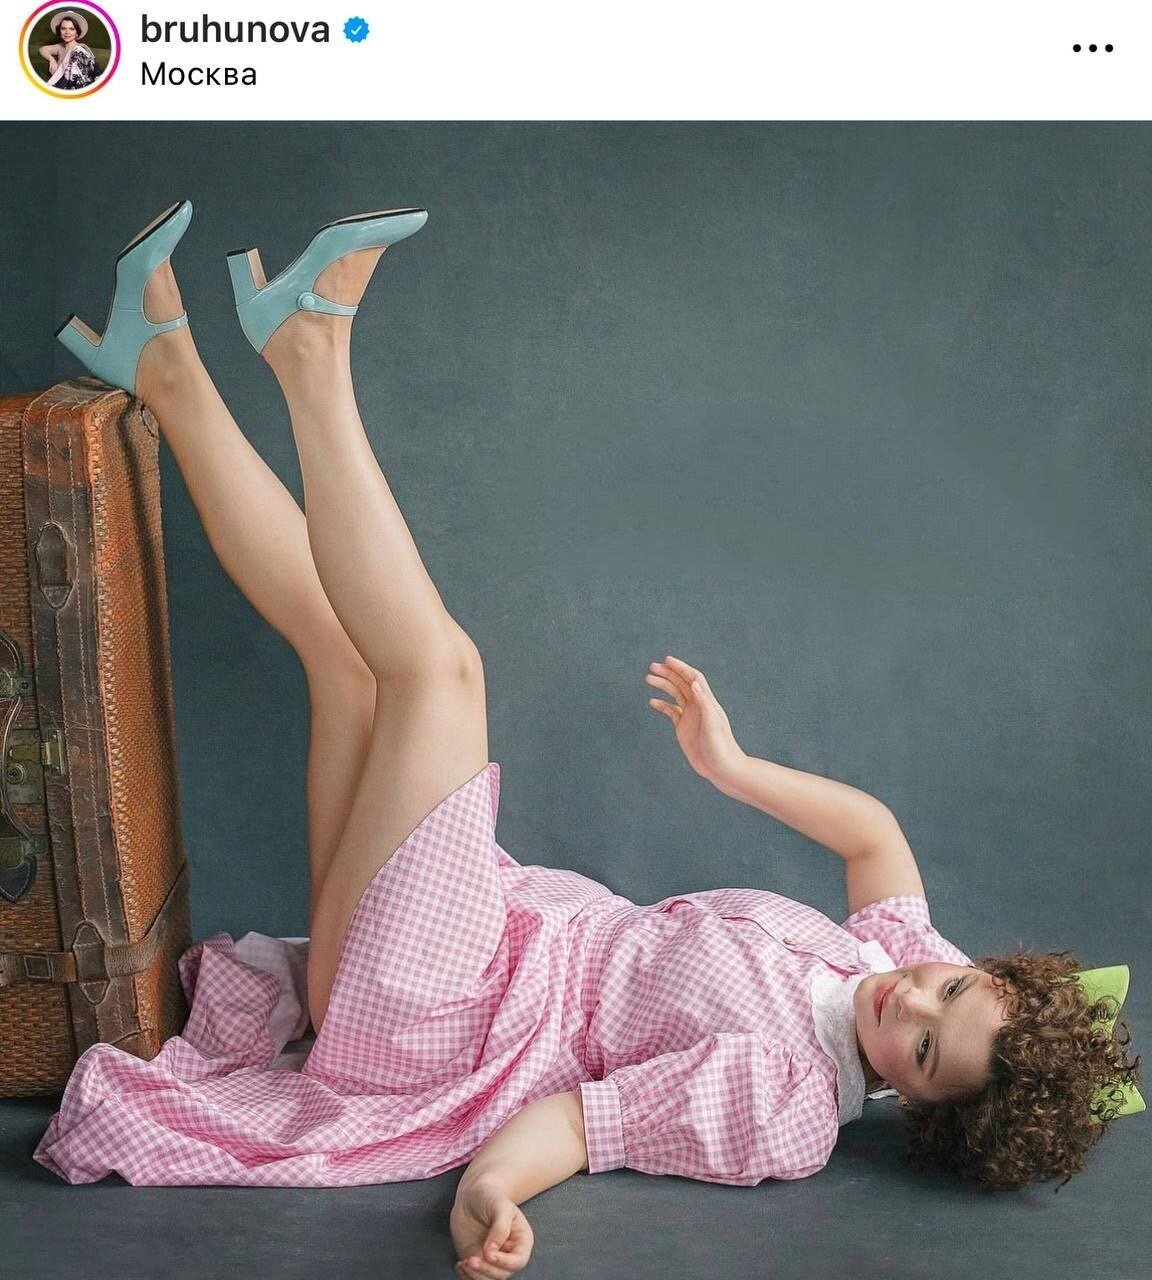 «Для старого извращенца»: Татьяна Брухунова в образе куклы развалилась на полу, задрав ноги и демонстрируя отсутствие трусов